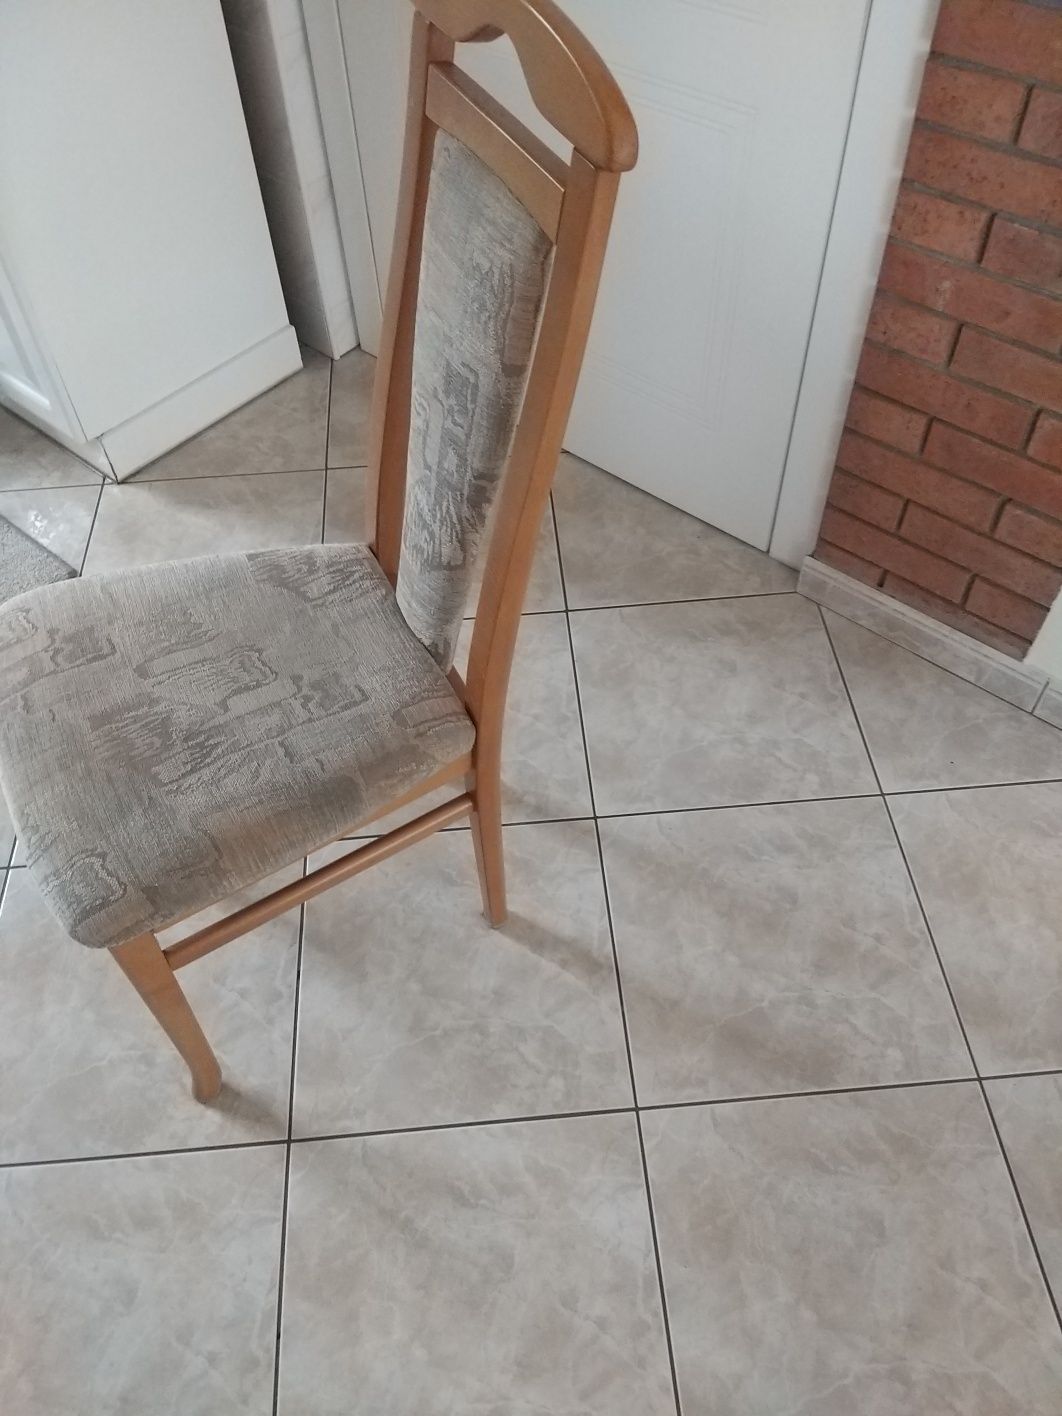 Sprzedam stół plus krzesla